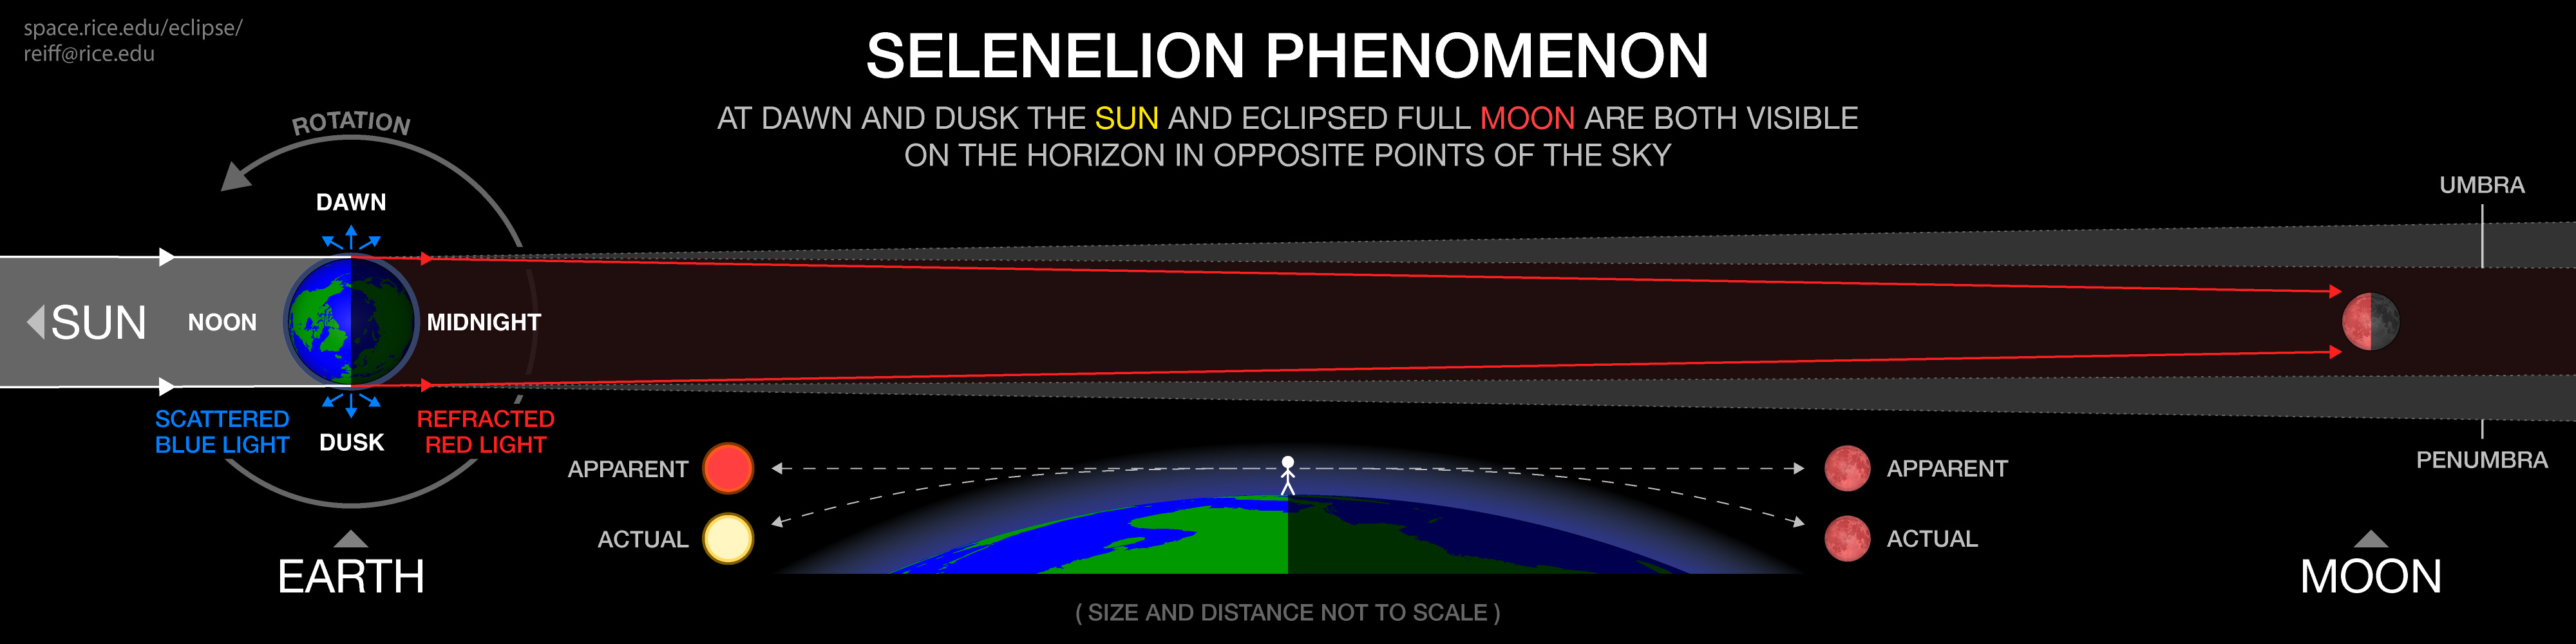 selenelion phenomenon diagram